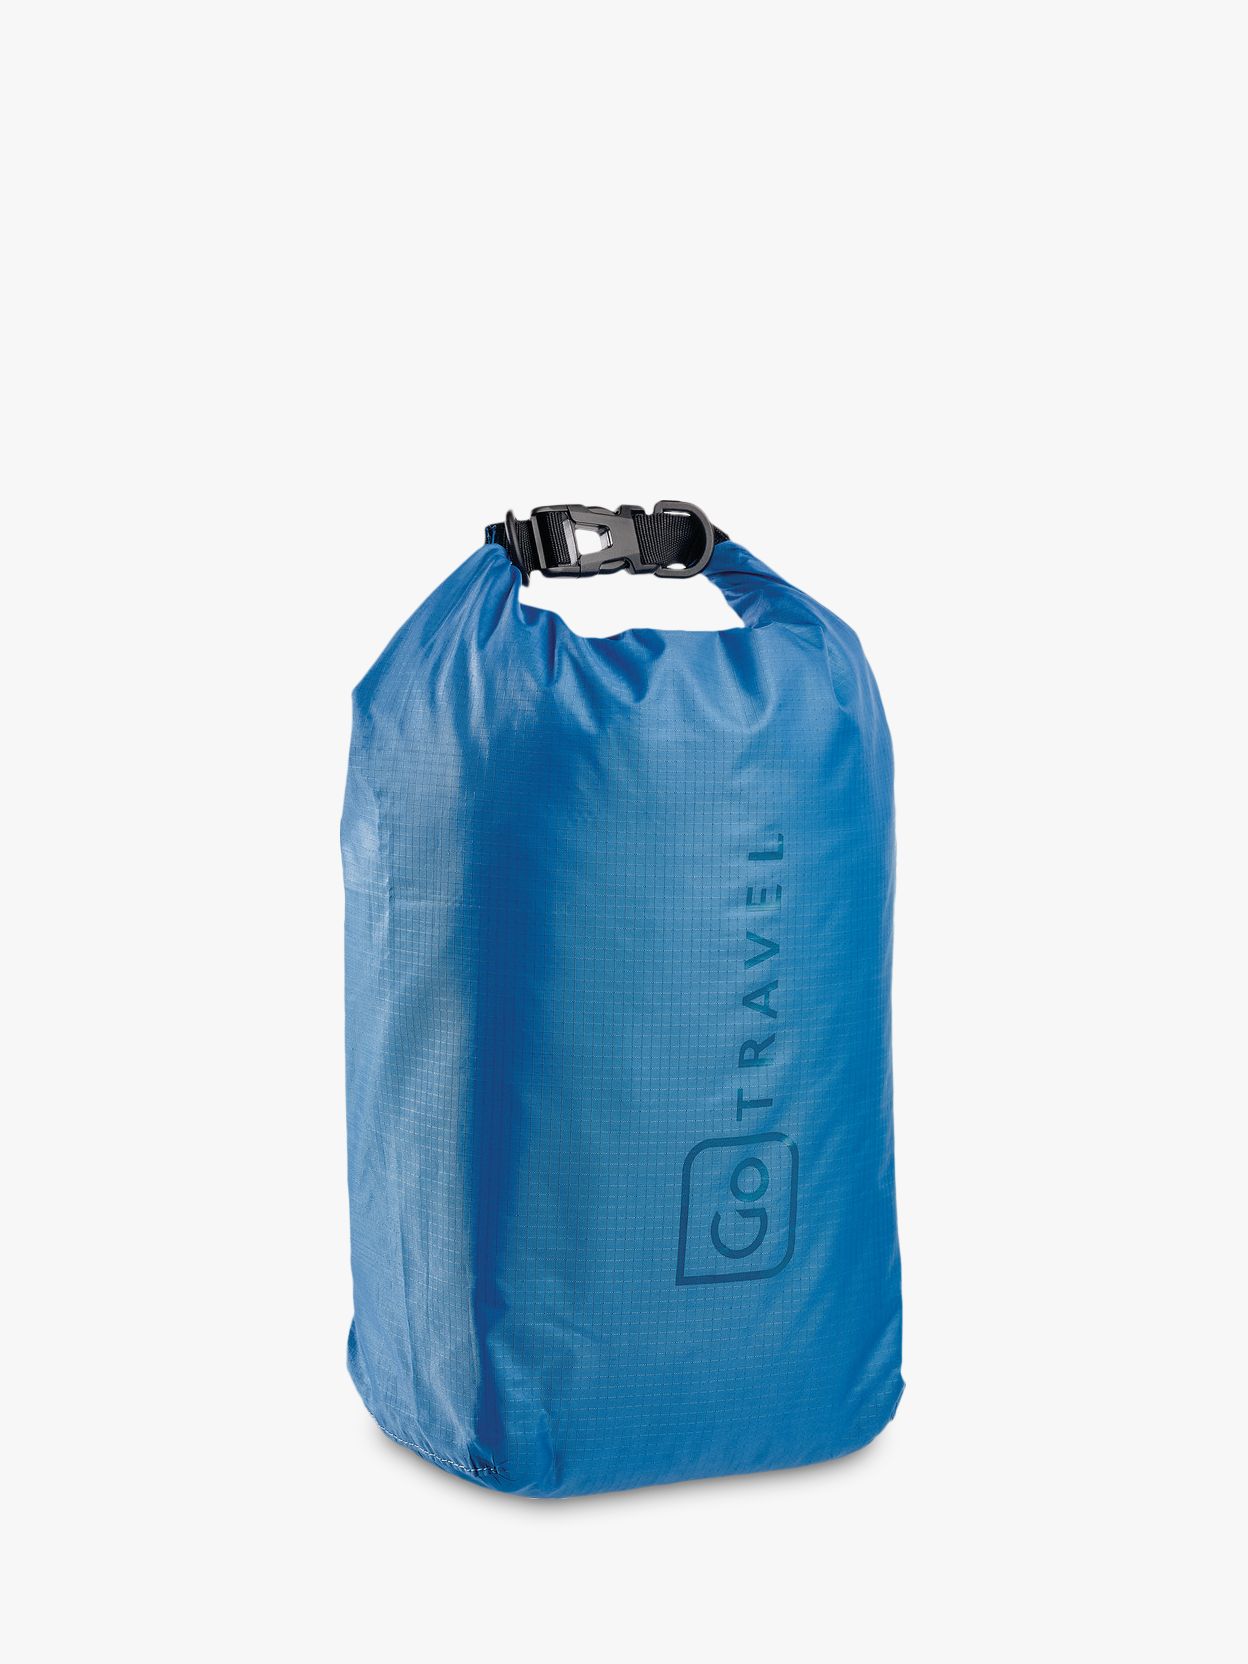 buy dry bag online